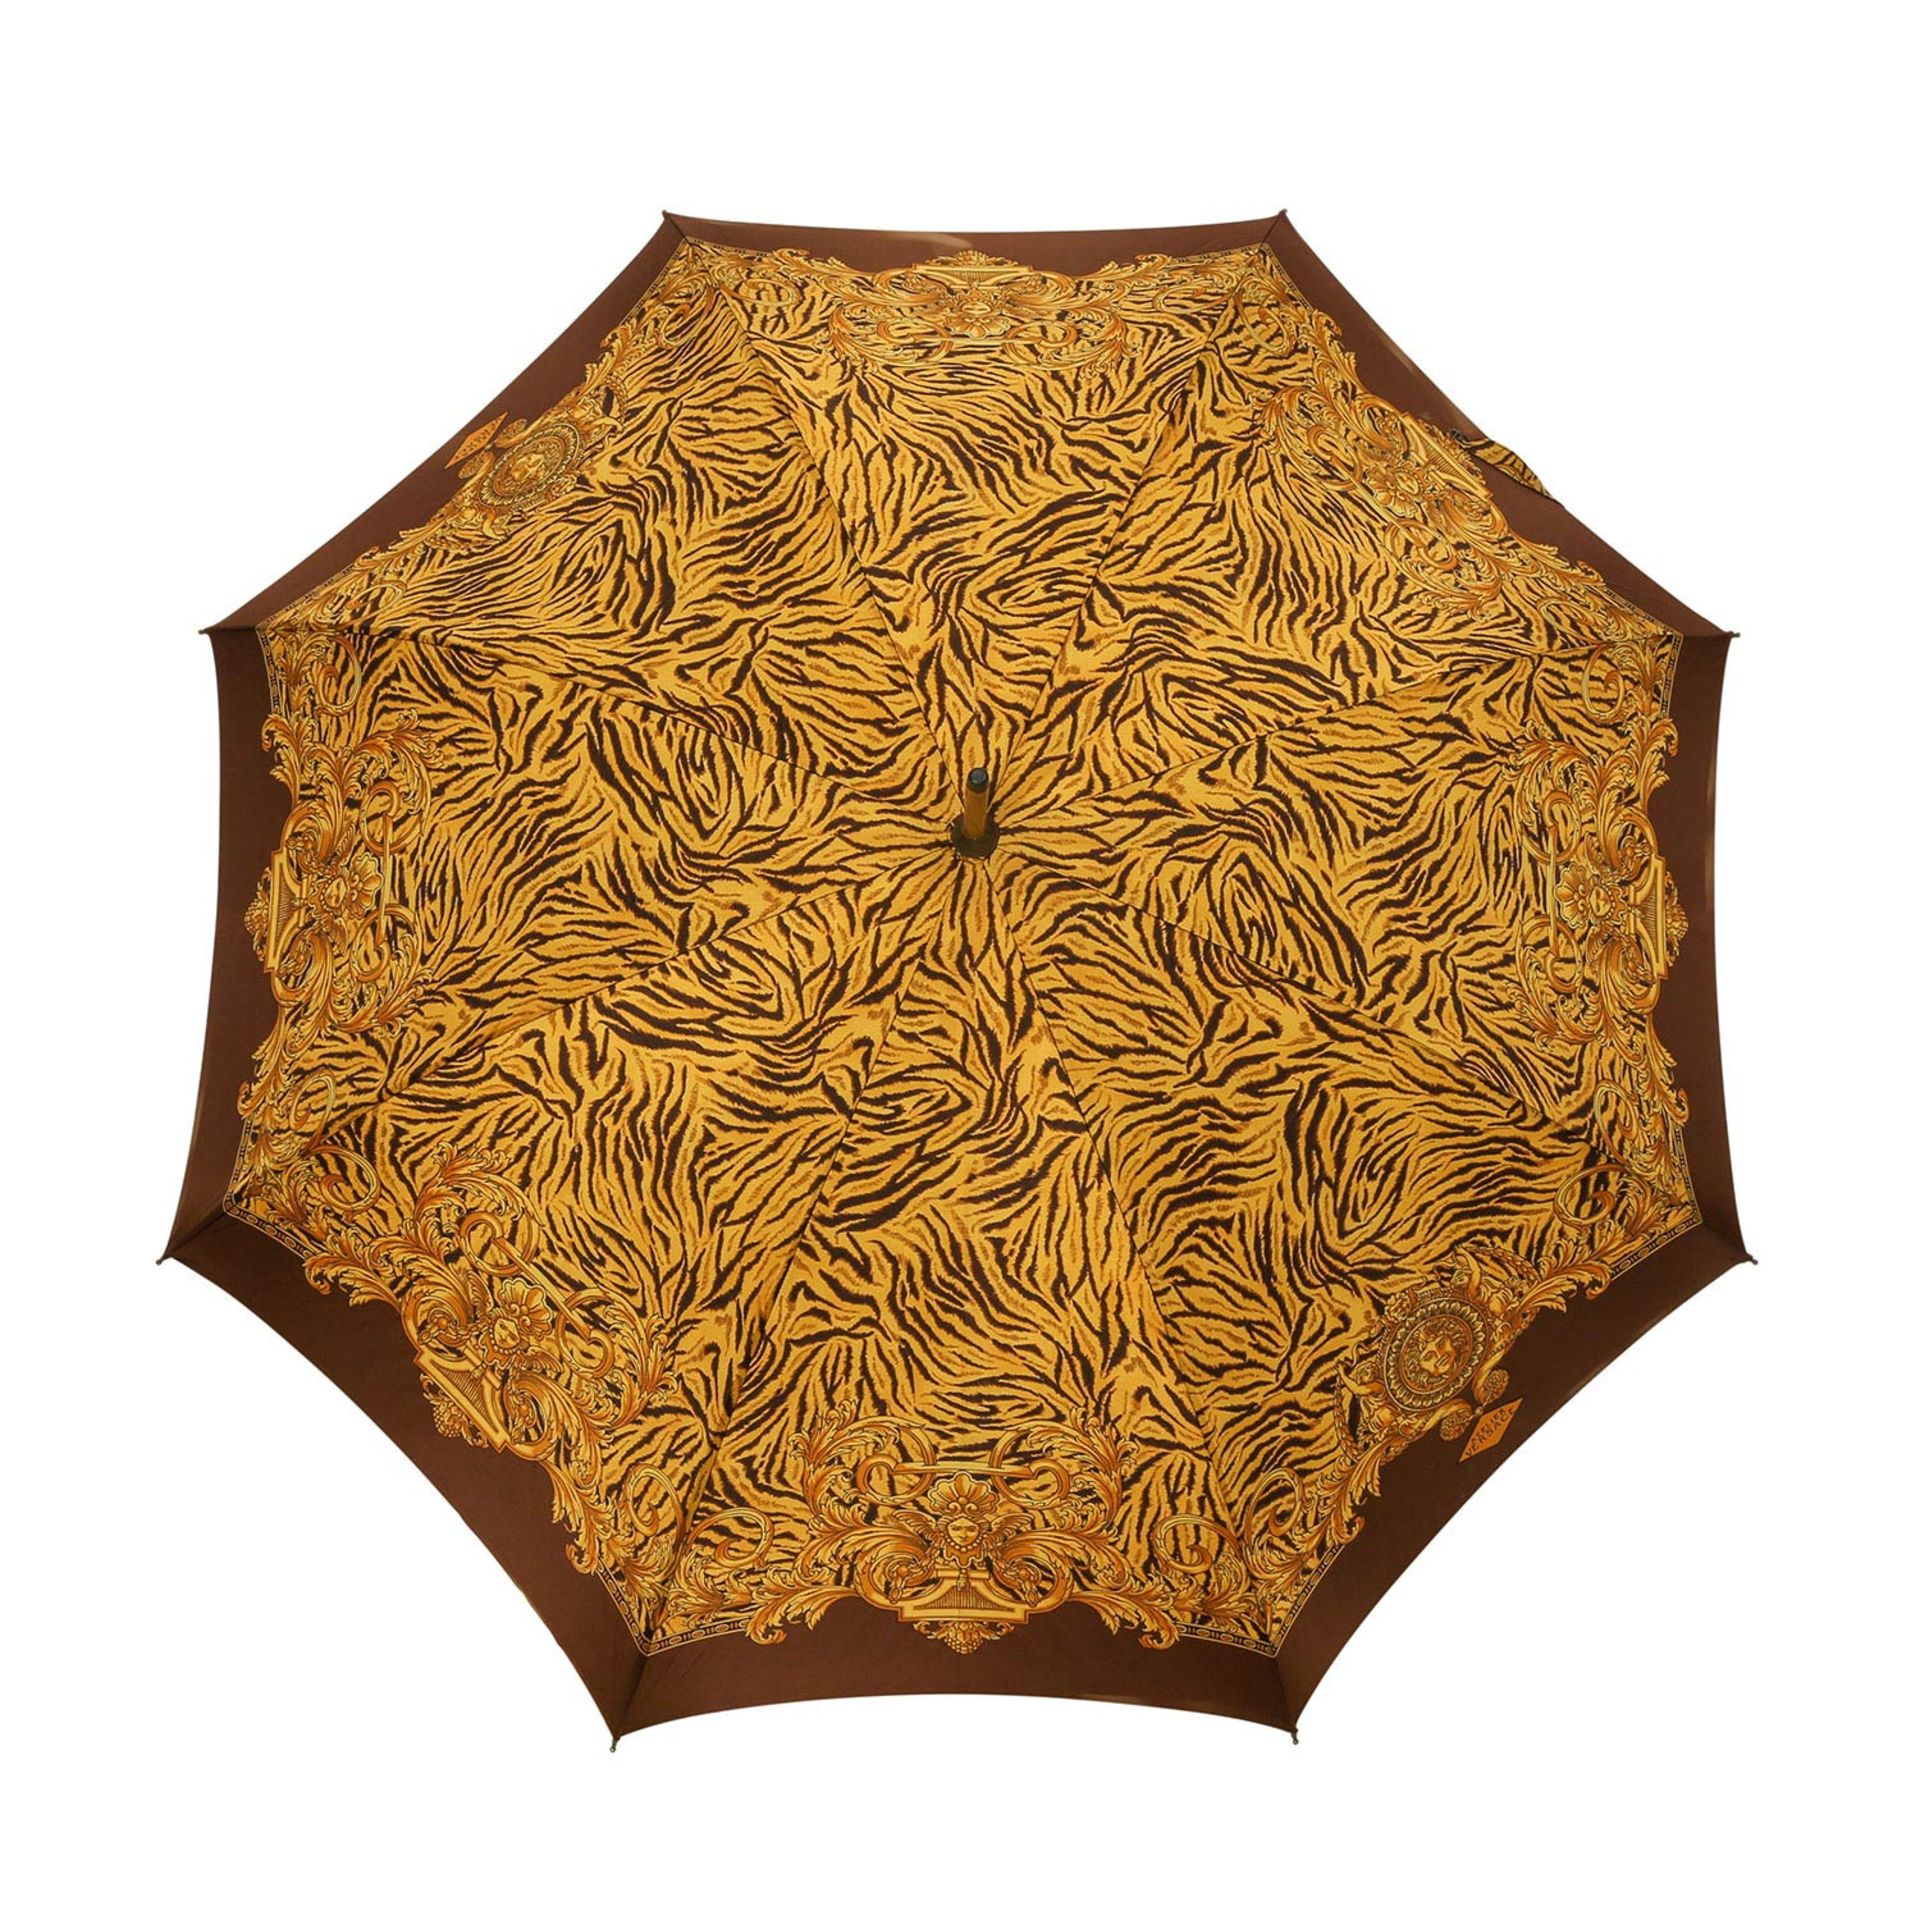 GIANNI VERSACE Regenschirm.Gold- und braunfarbener Tiger-Print mit goldfarbenen Barocken-